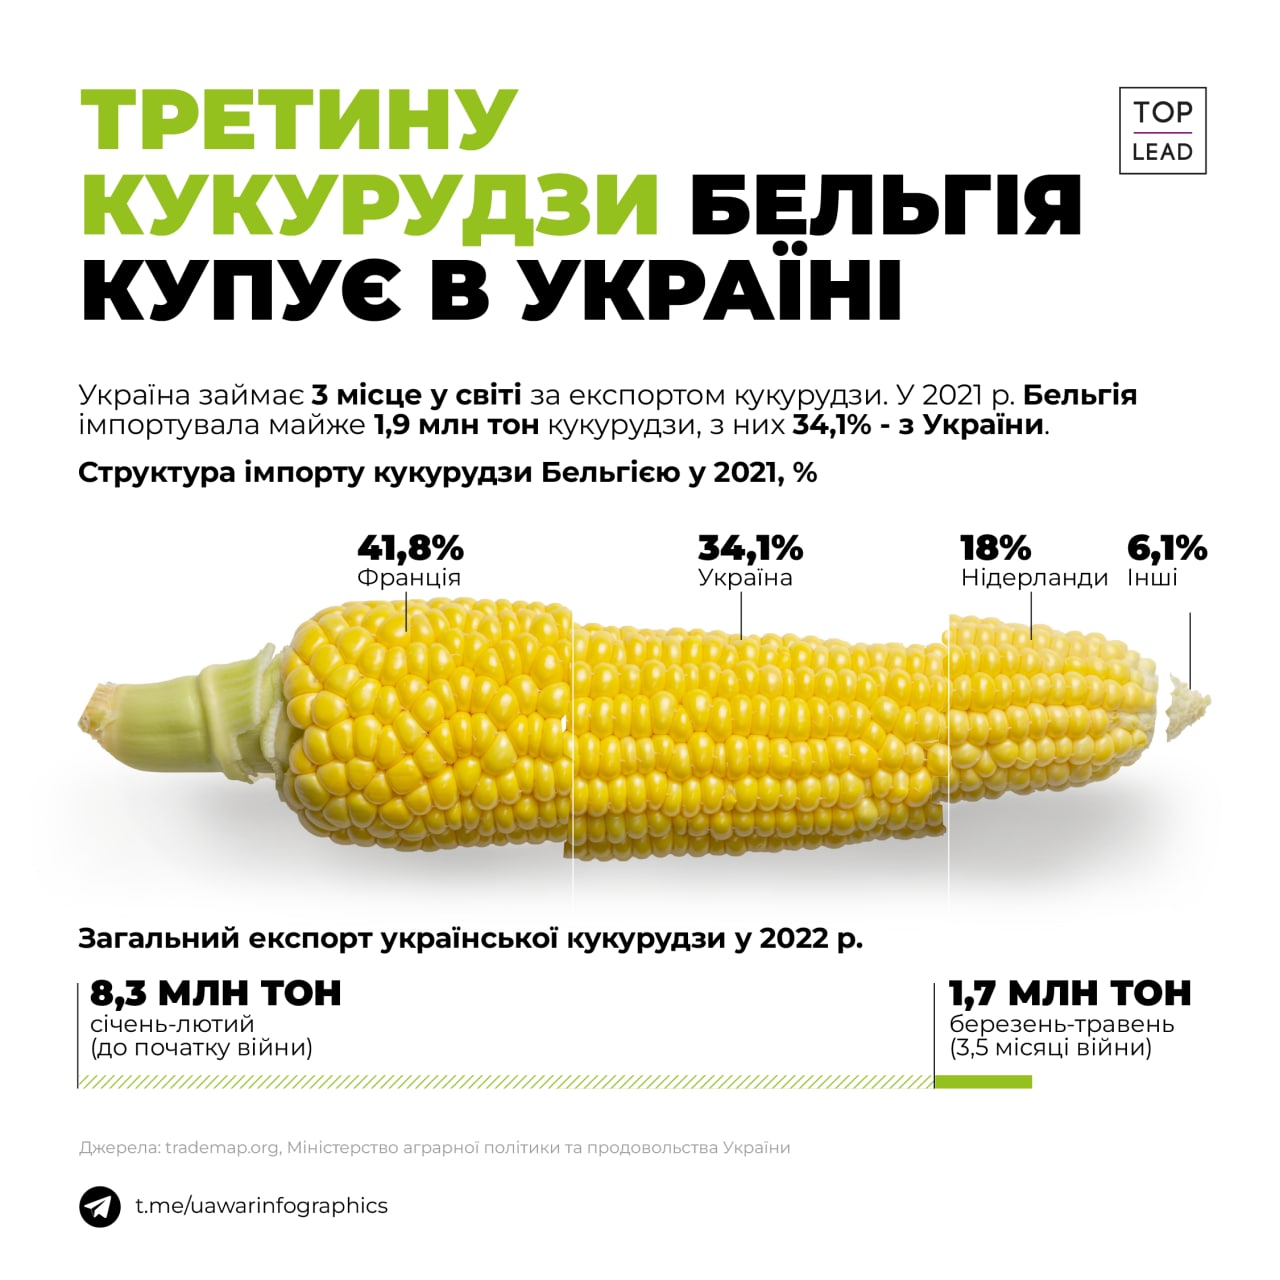 Бельгія імпортує третину кукурудзи з України